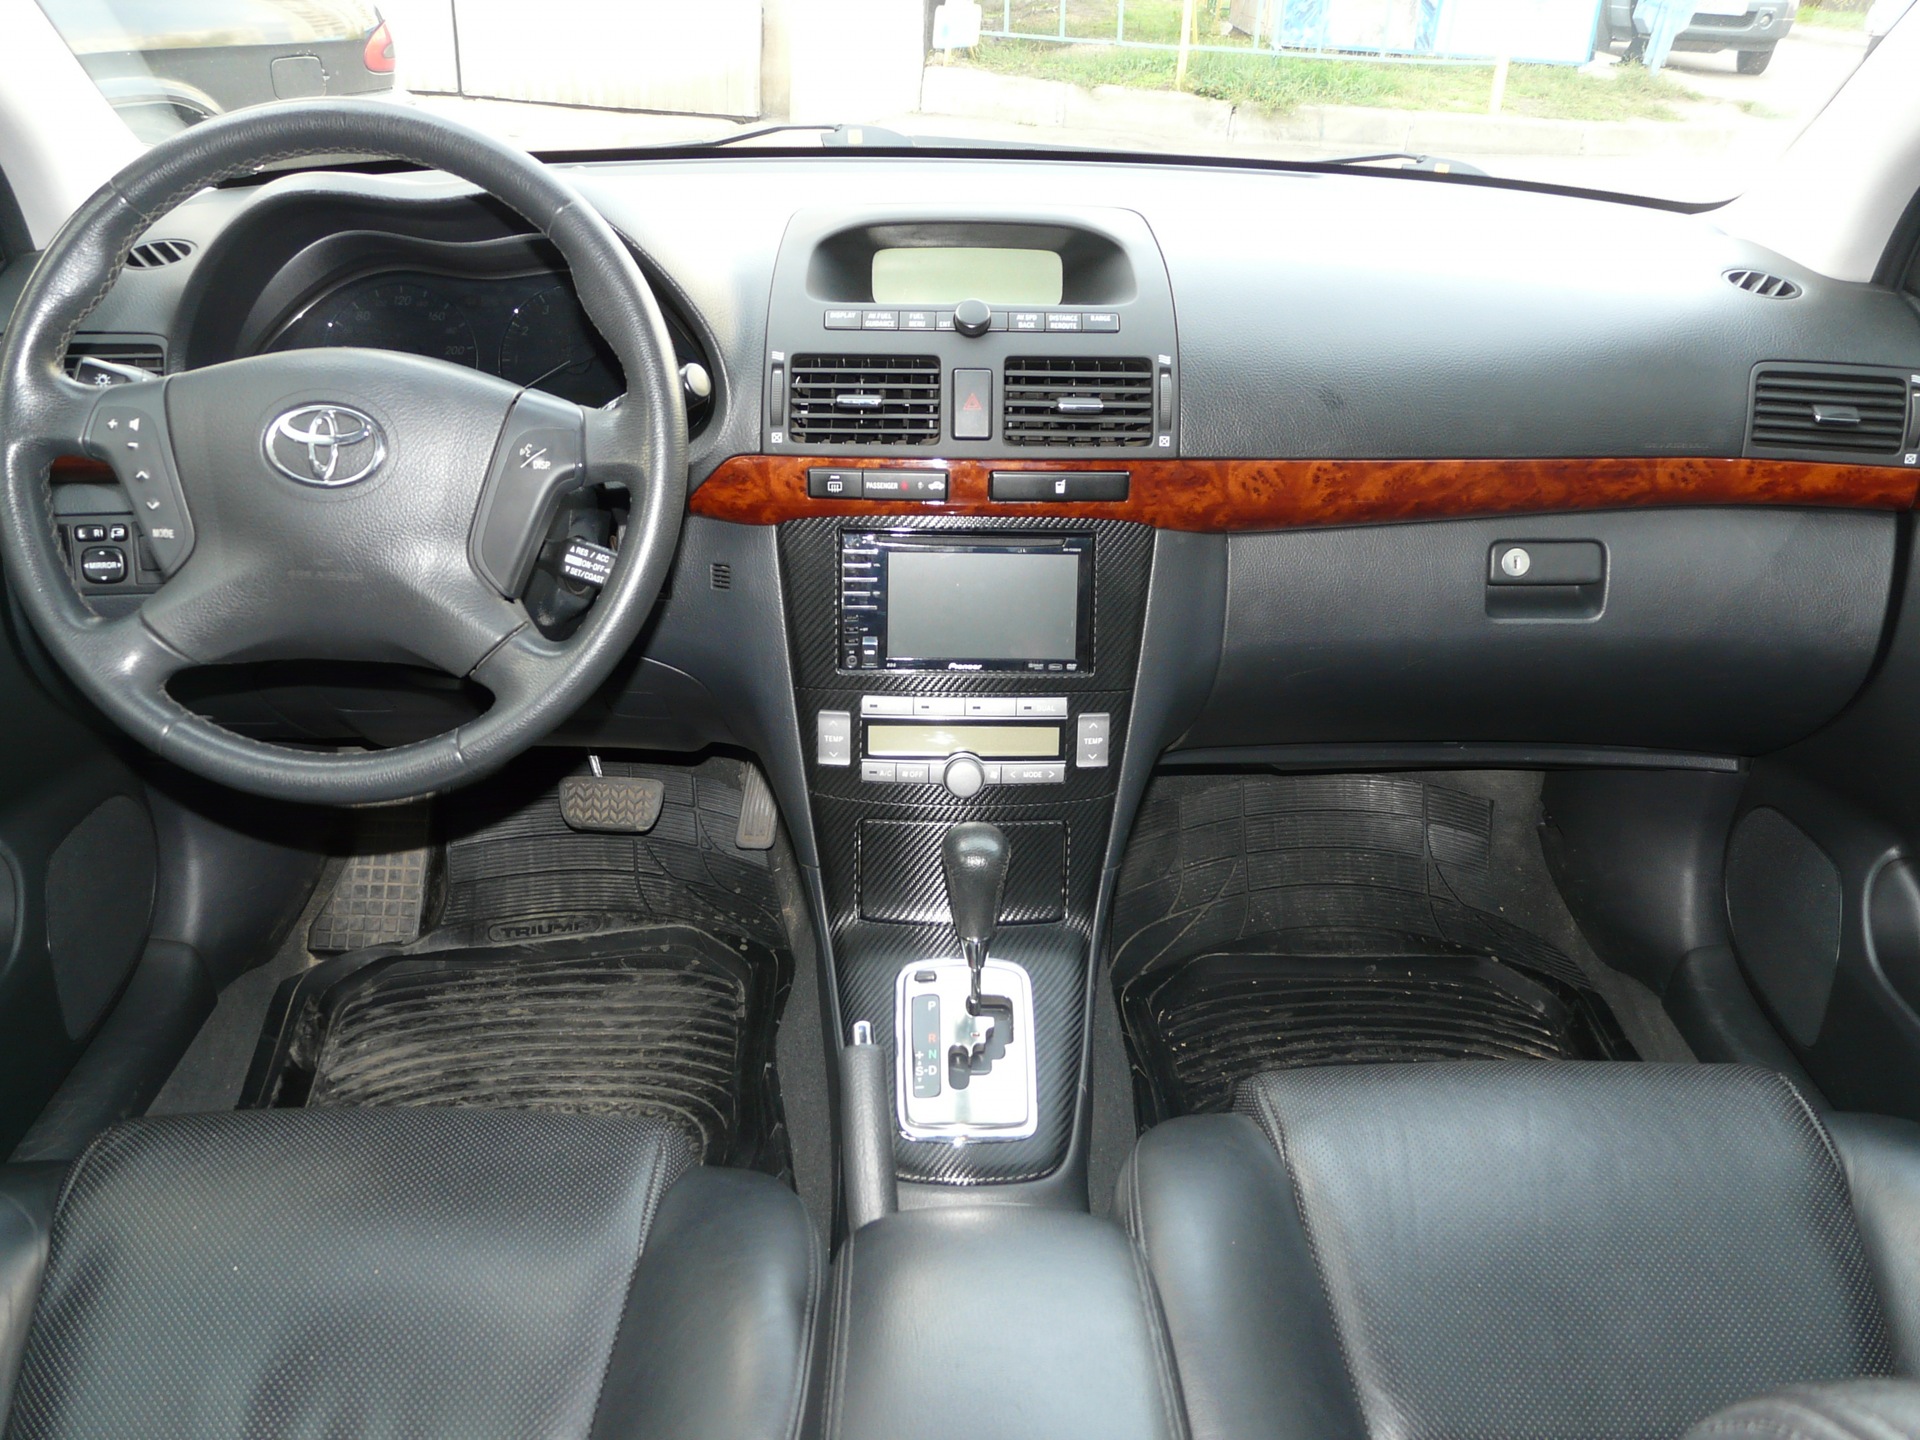 Торпеда авенсис. Toyota Avensis 2008 салон. Toyota Avensis 2007 Interior. Toyota Avensis 2007 салон. Avensis 2008 салон.